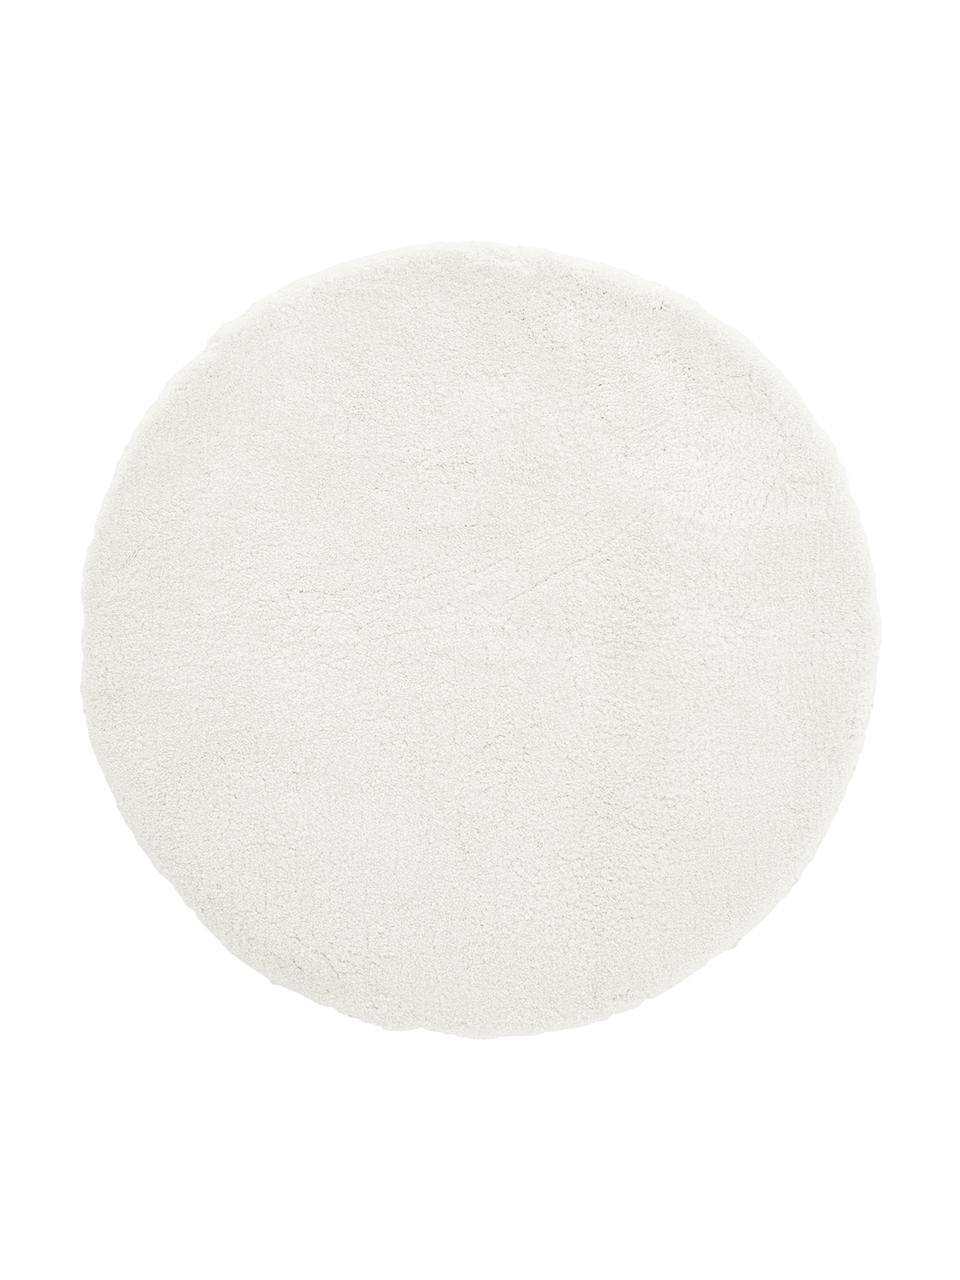 Tappeto rotondo soffice a pelo lungo Leighton, Retro: 70% poliestere, 30% coton, Bianco crema, Ø 150 cm (taglia M)